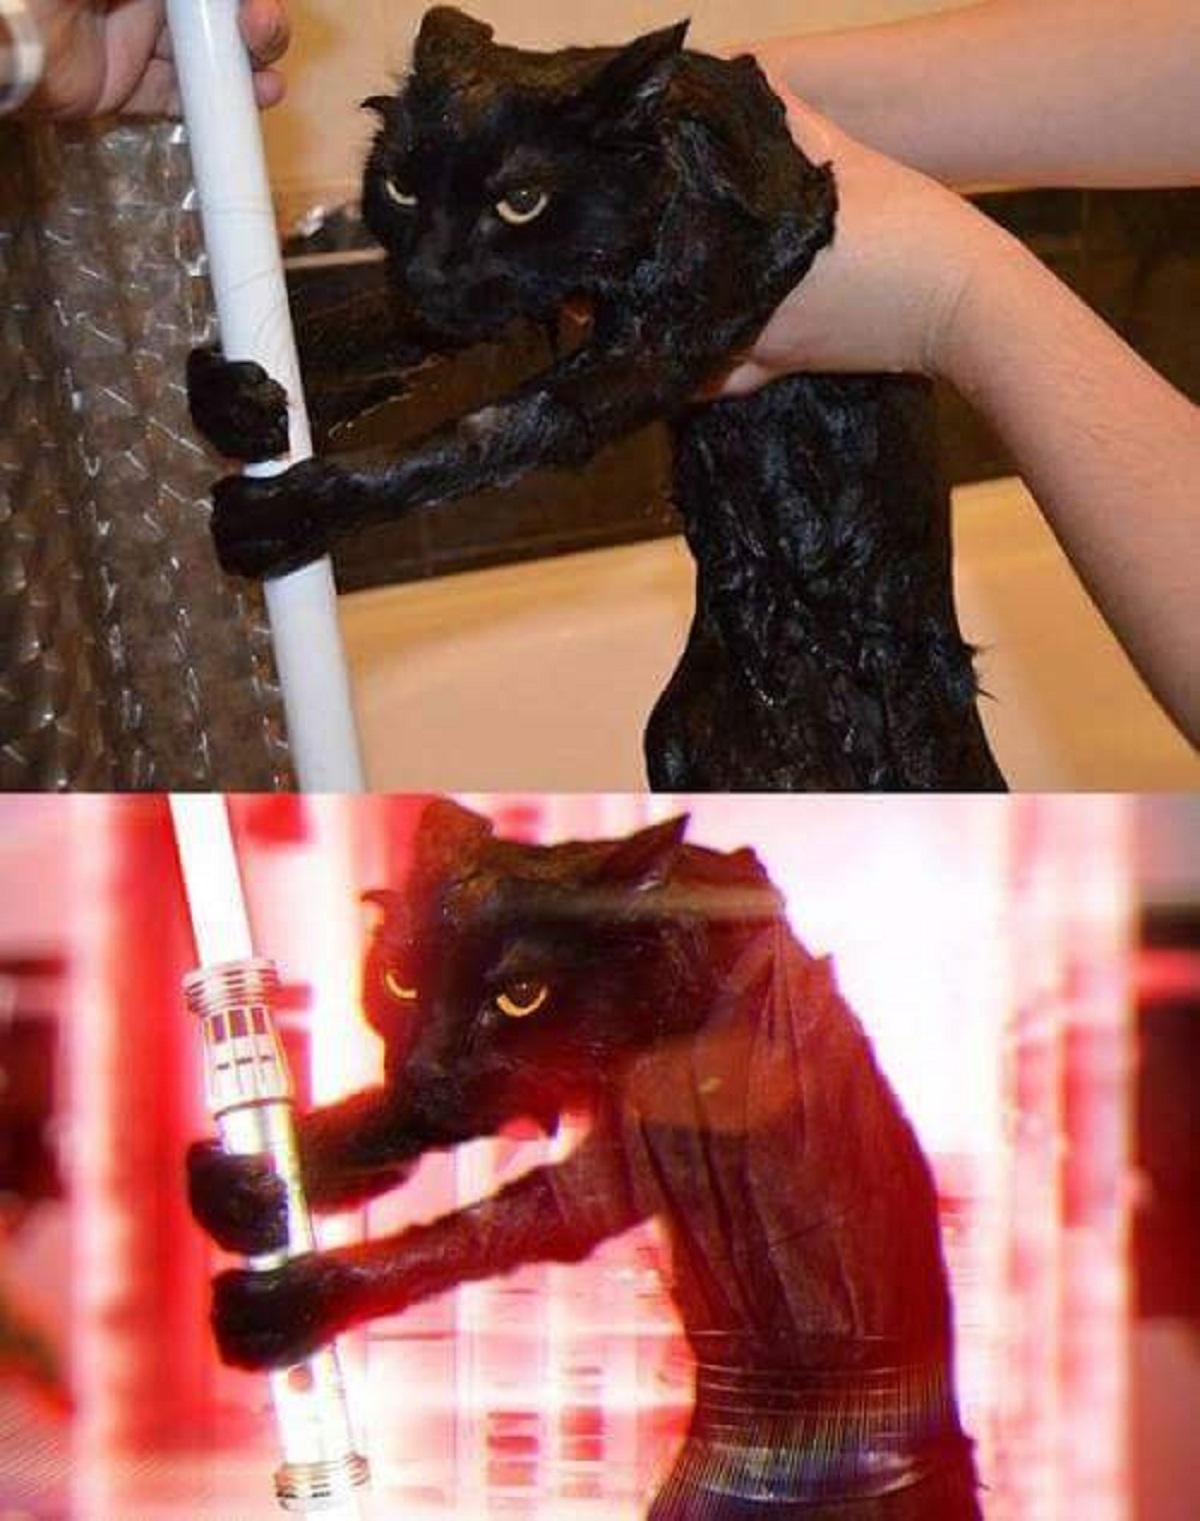 10 foto esilaranti di gatti-gatto con spada laser